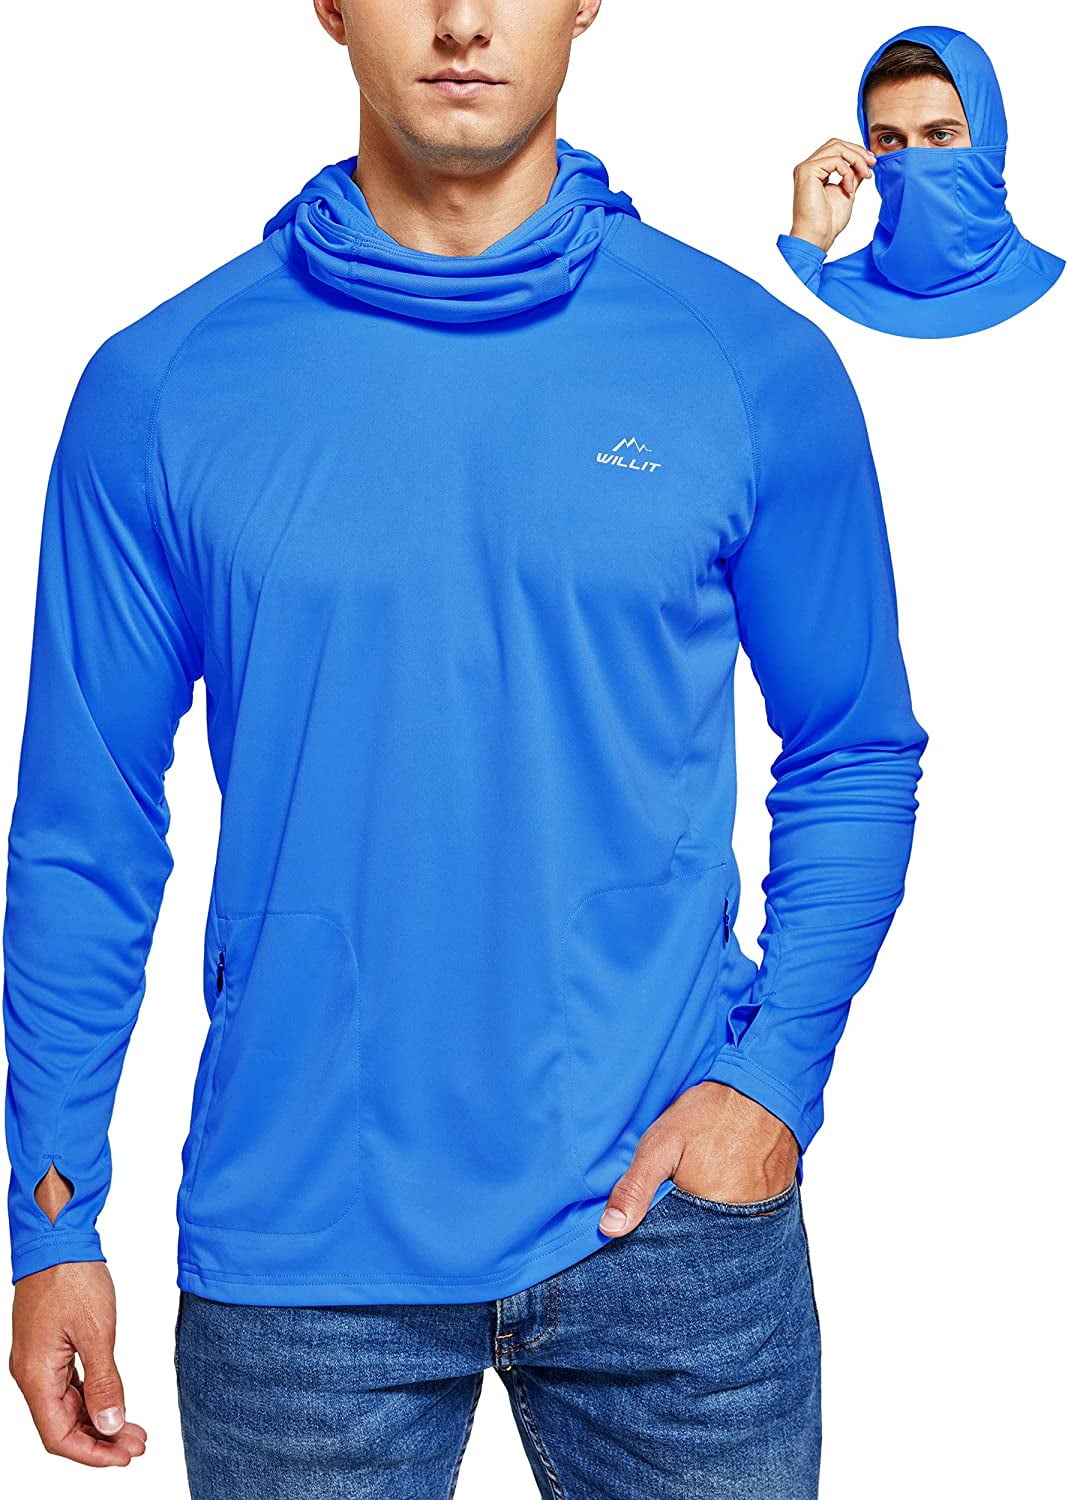 Sun Protection Shirt Long Sleeve SPF UV Shirt Hiking Outdoor Top Lightweight Willit Women's UPF 50 